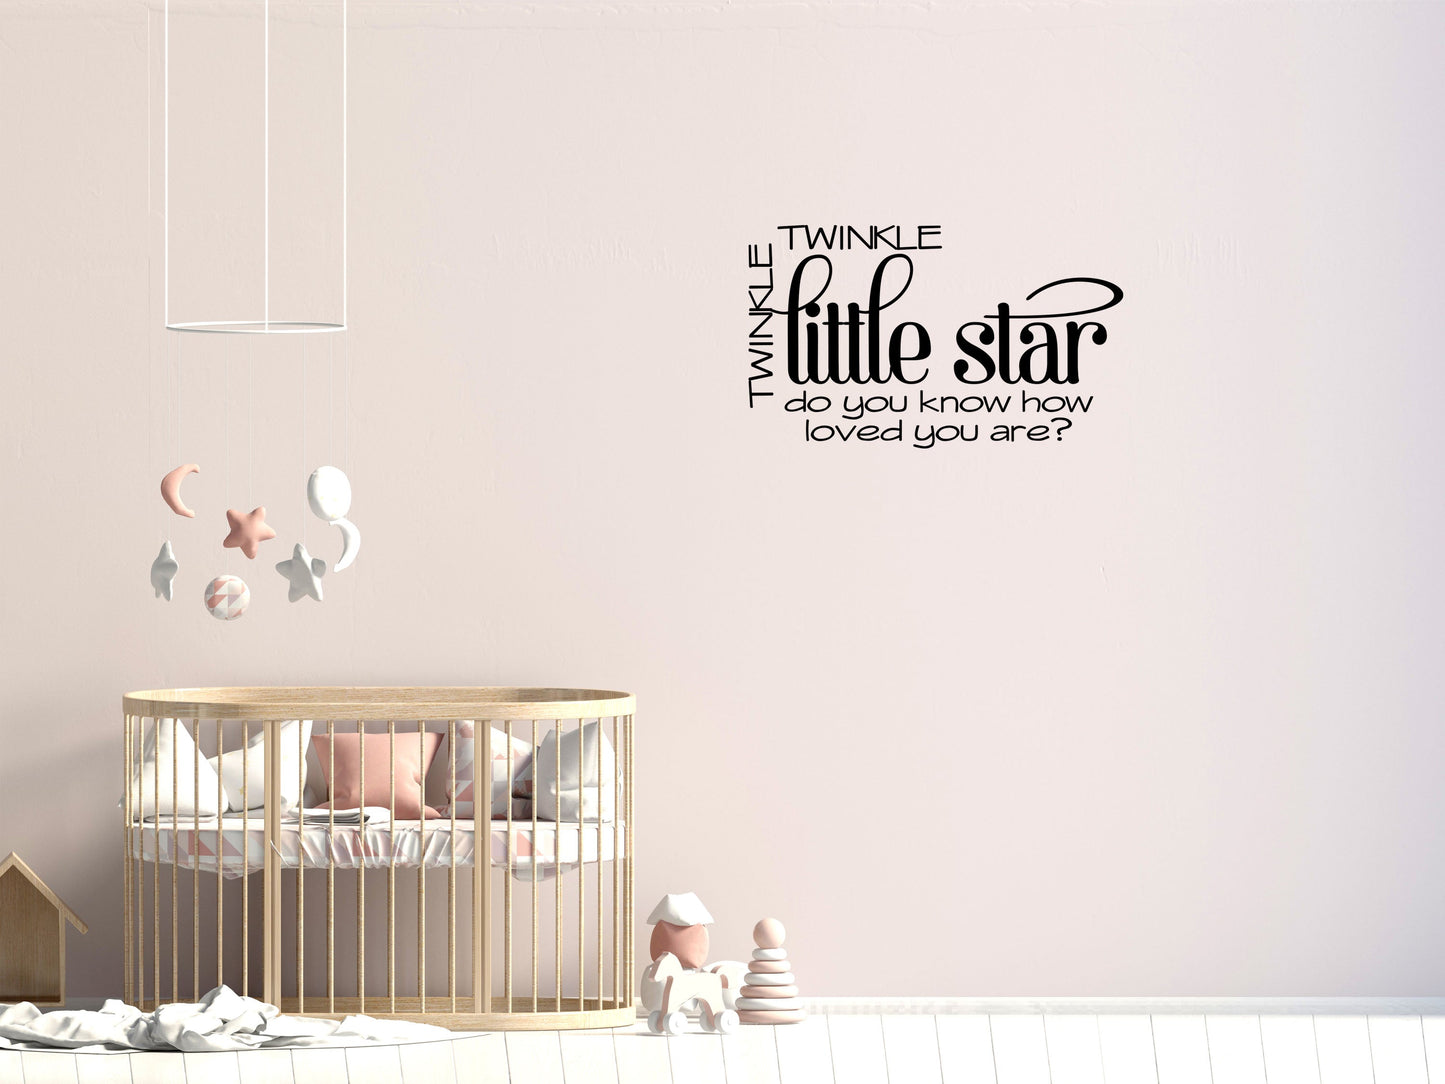 Twinkle Twinkle Little Star - Inspirational Wall Signs Vinyl Wall Decal Inspirational Wall Signs 